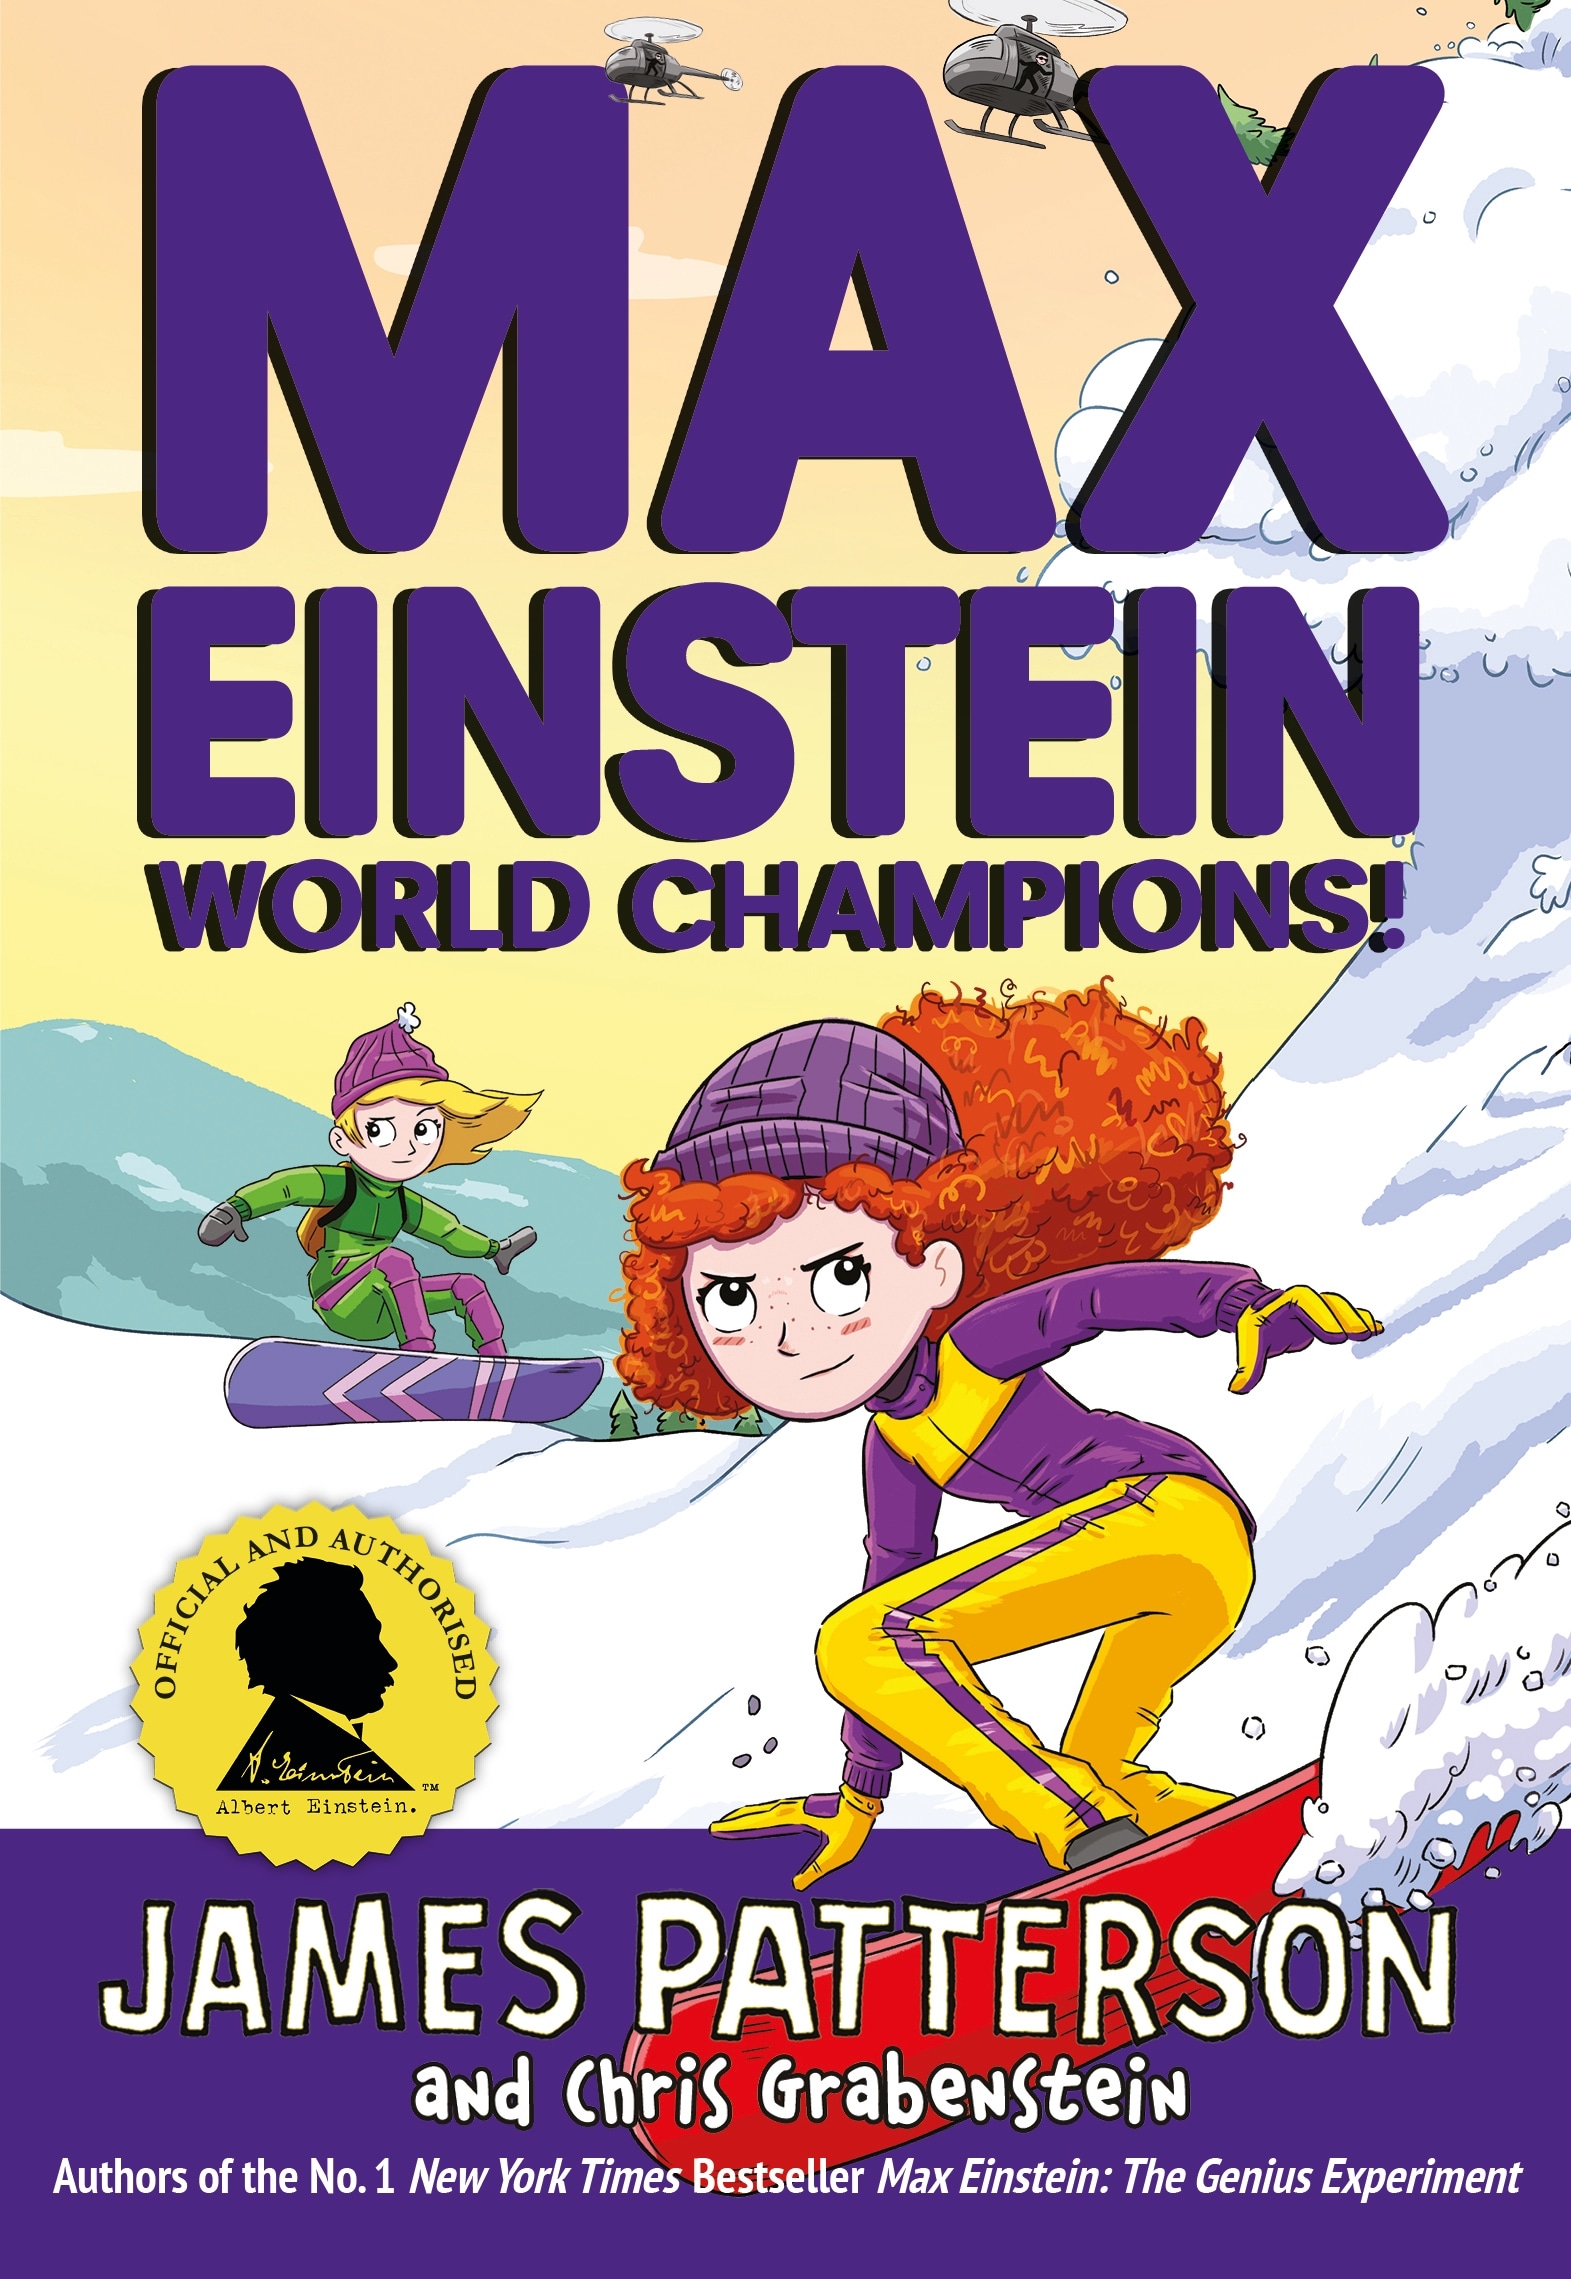 Book “Max Einstein: World Champions!” by James Patterson — August 5, 2021